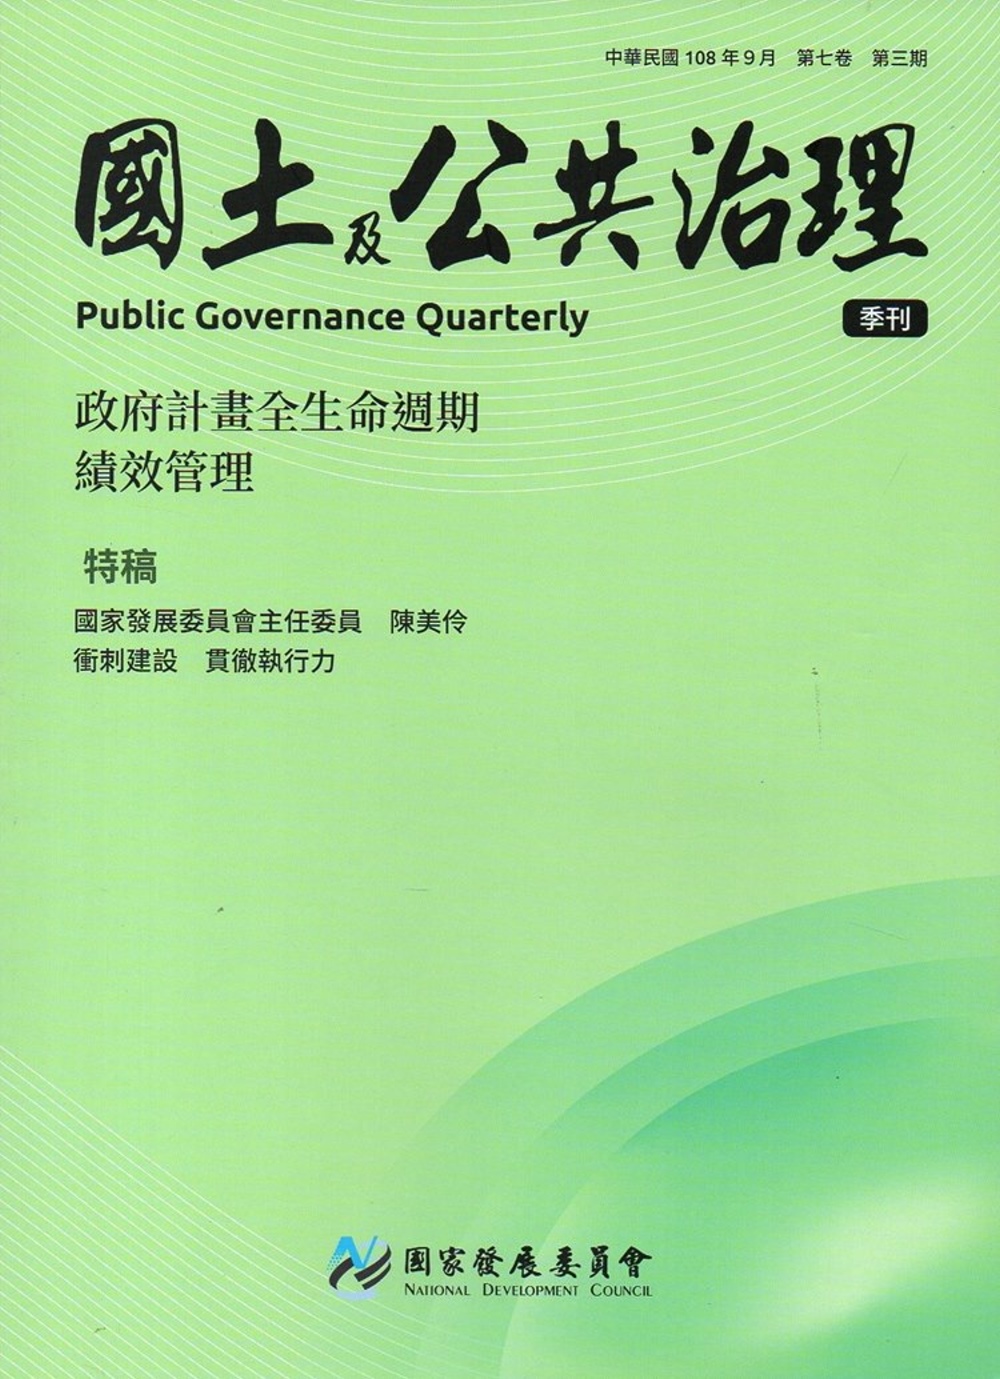 國土及公共治理季刊第7卷第3期(108.09)